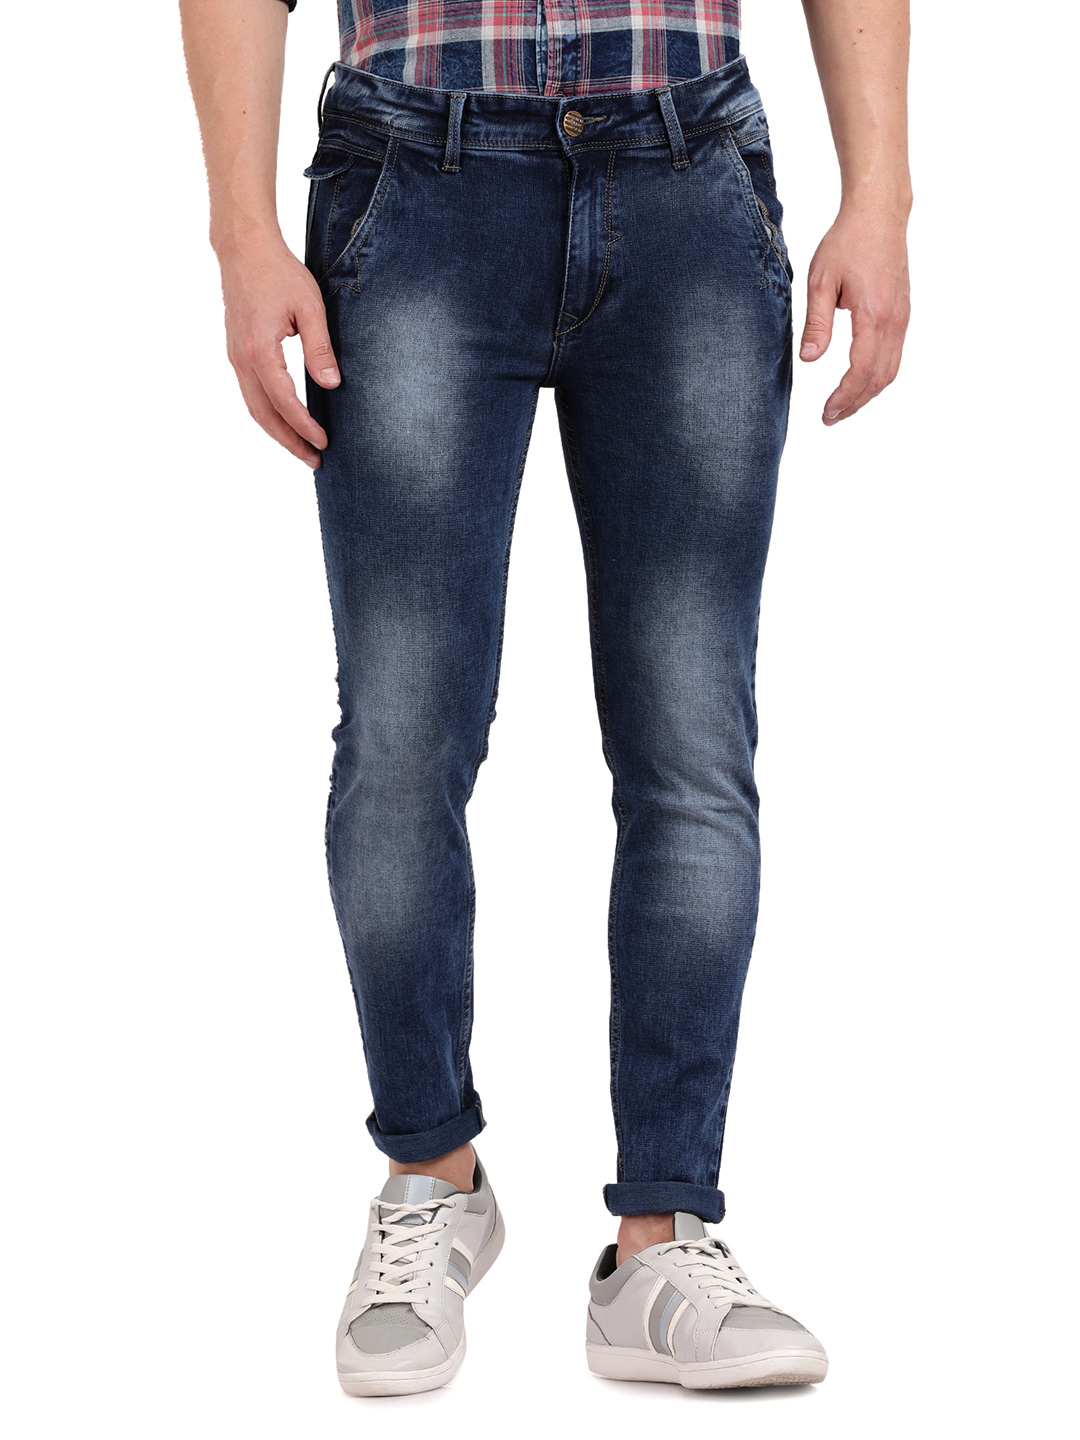 View Jeans - Trendyfit